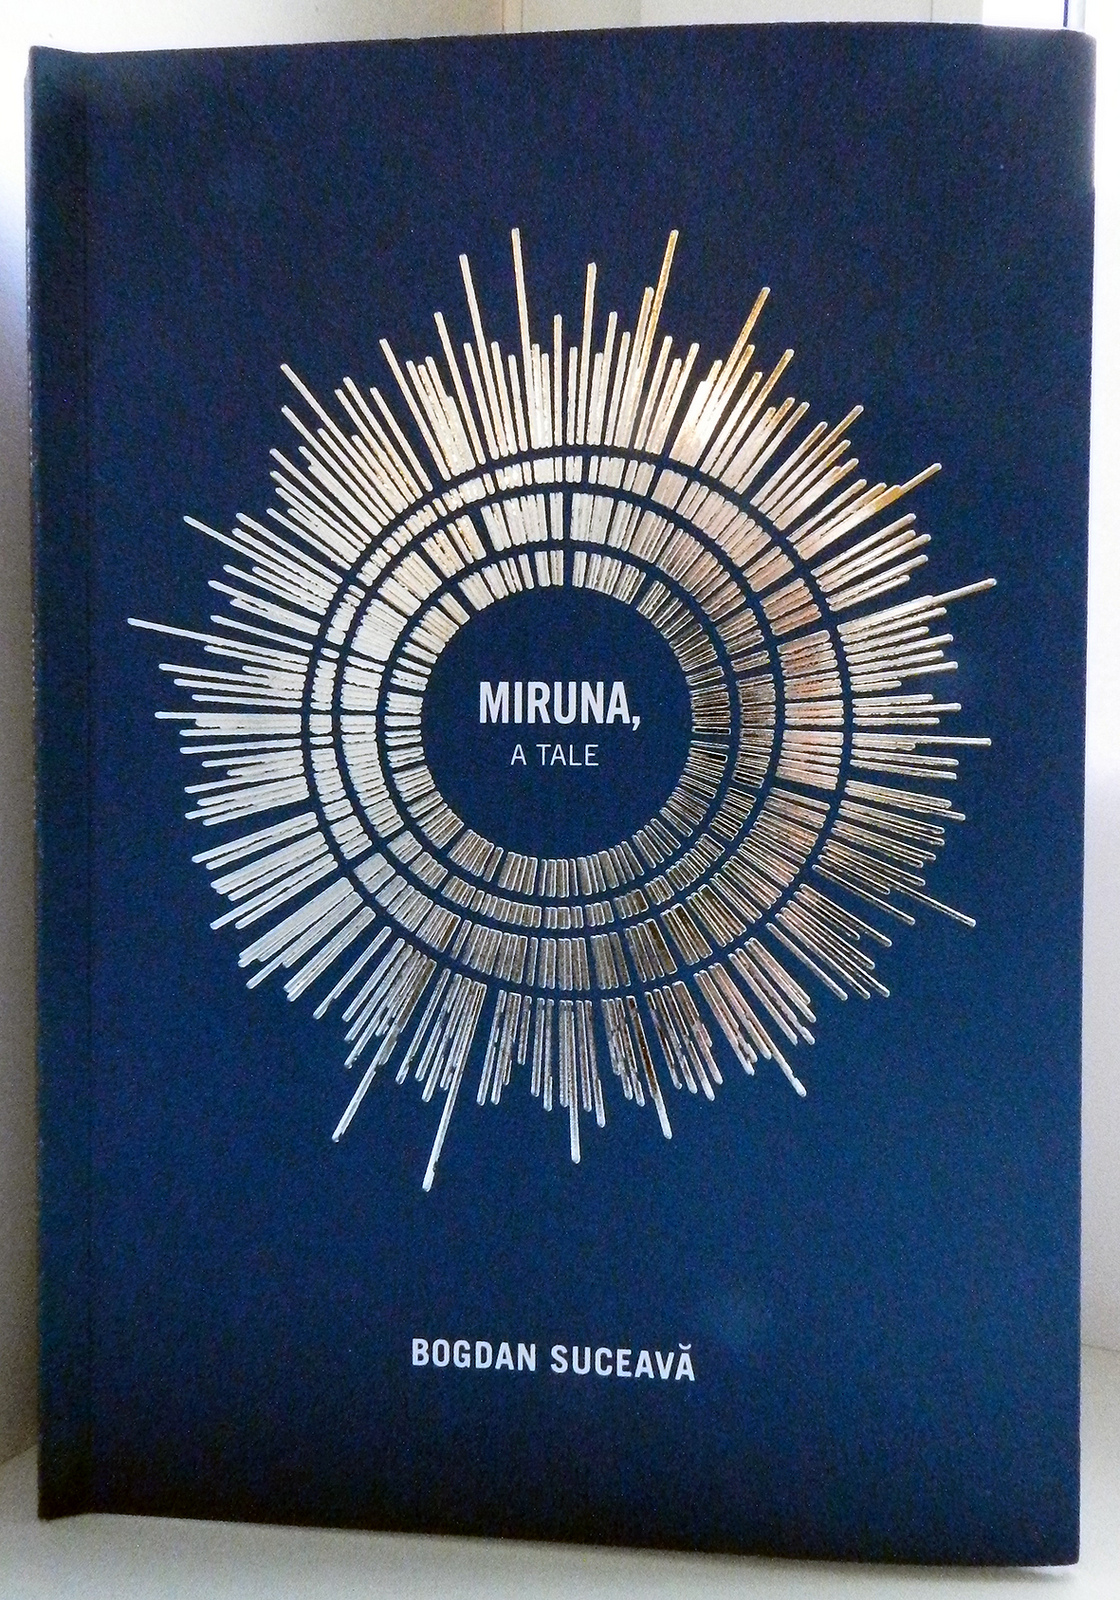 Bogdan Suceavă: “Miruna, a Tale”, released in the USA